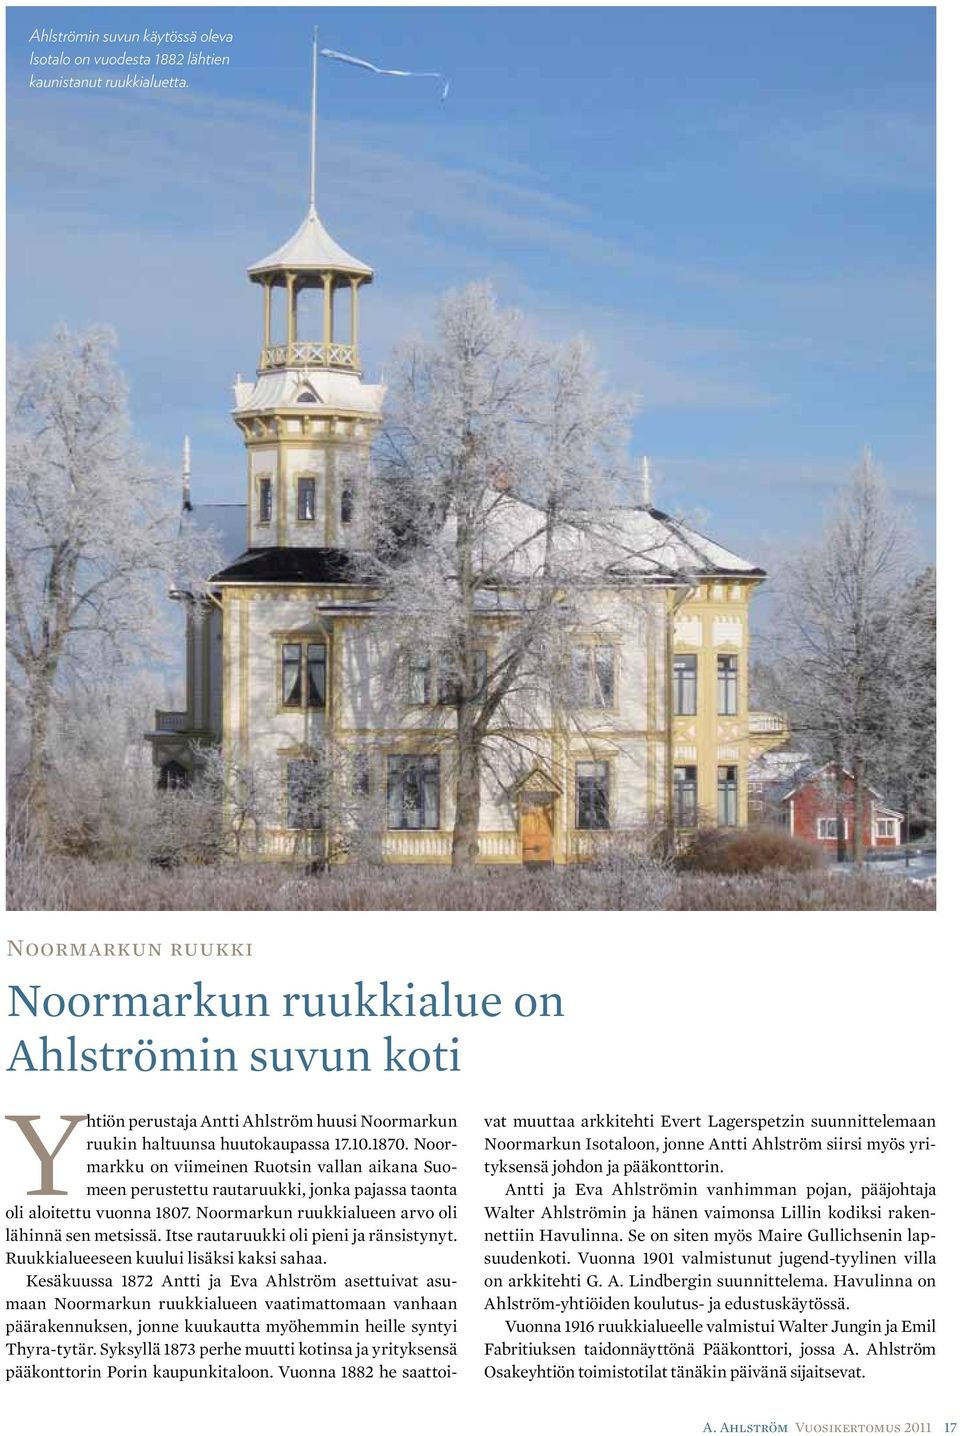 Noormarkku on viimeinen Ruotsin vallan aikana Suomeen perustettu rautaruukki, jonka pajassa taonta oli aloitettu vuonna 1807. Noormarkun ruukkialueen arvo oli lähinnä sen metsissä.